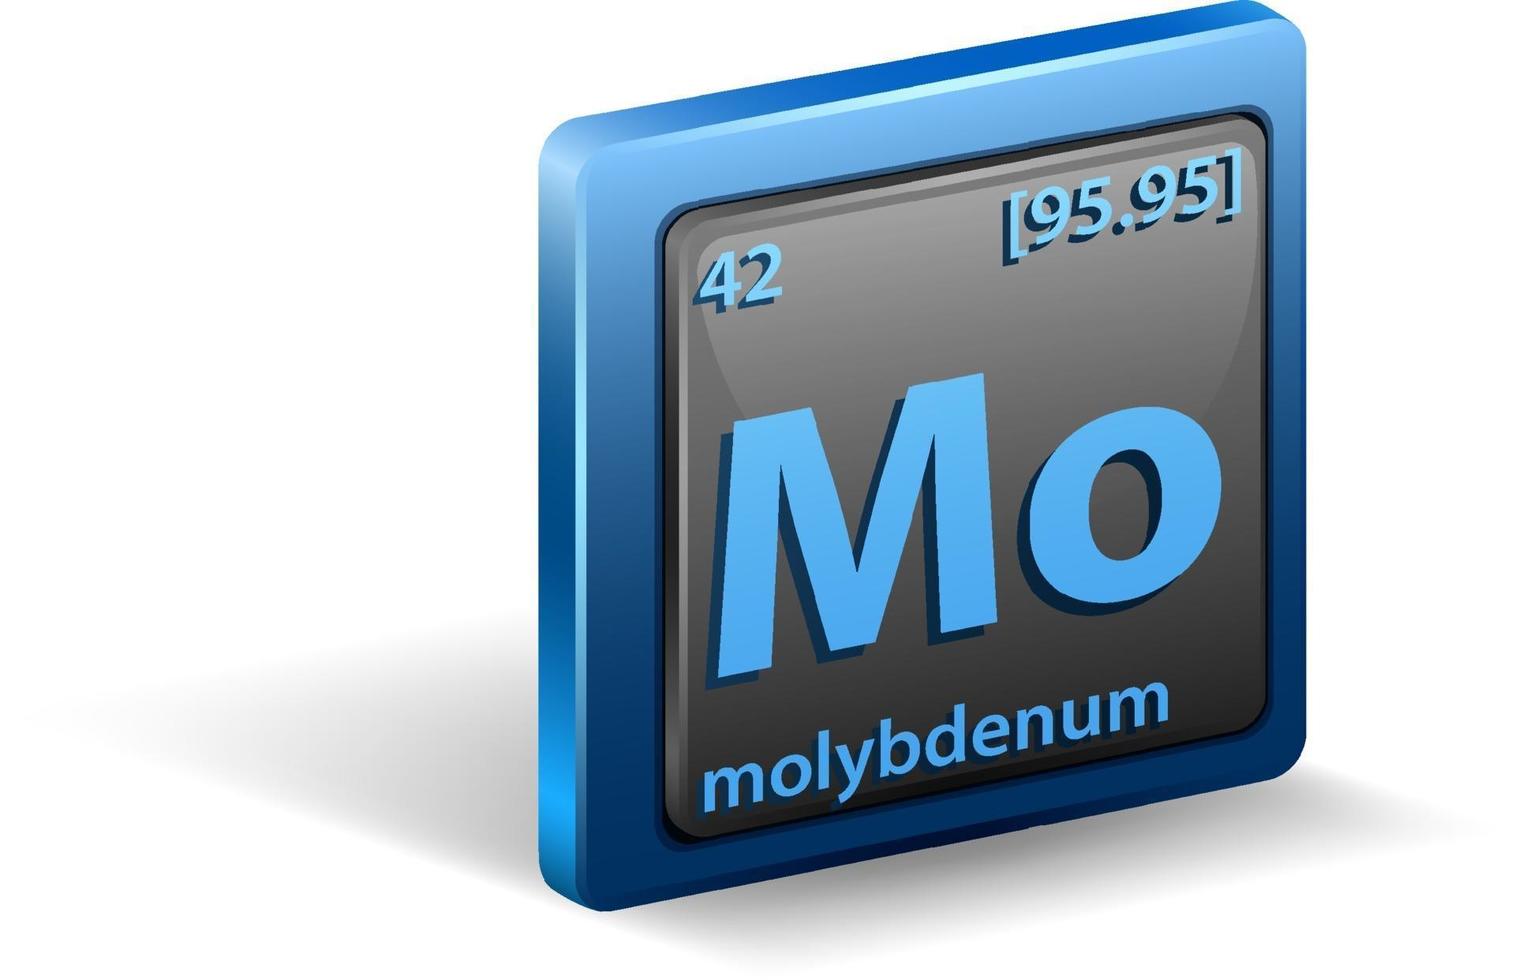 élément chimique de molybdène. symbole chimique avec numéro atomique et masse atomique. vecteur